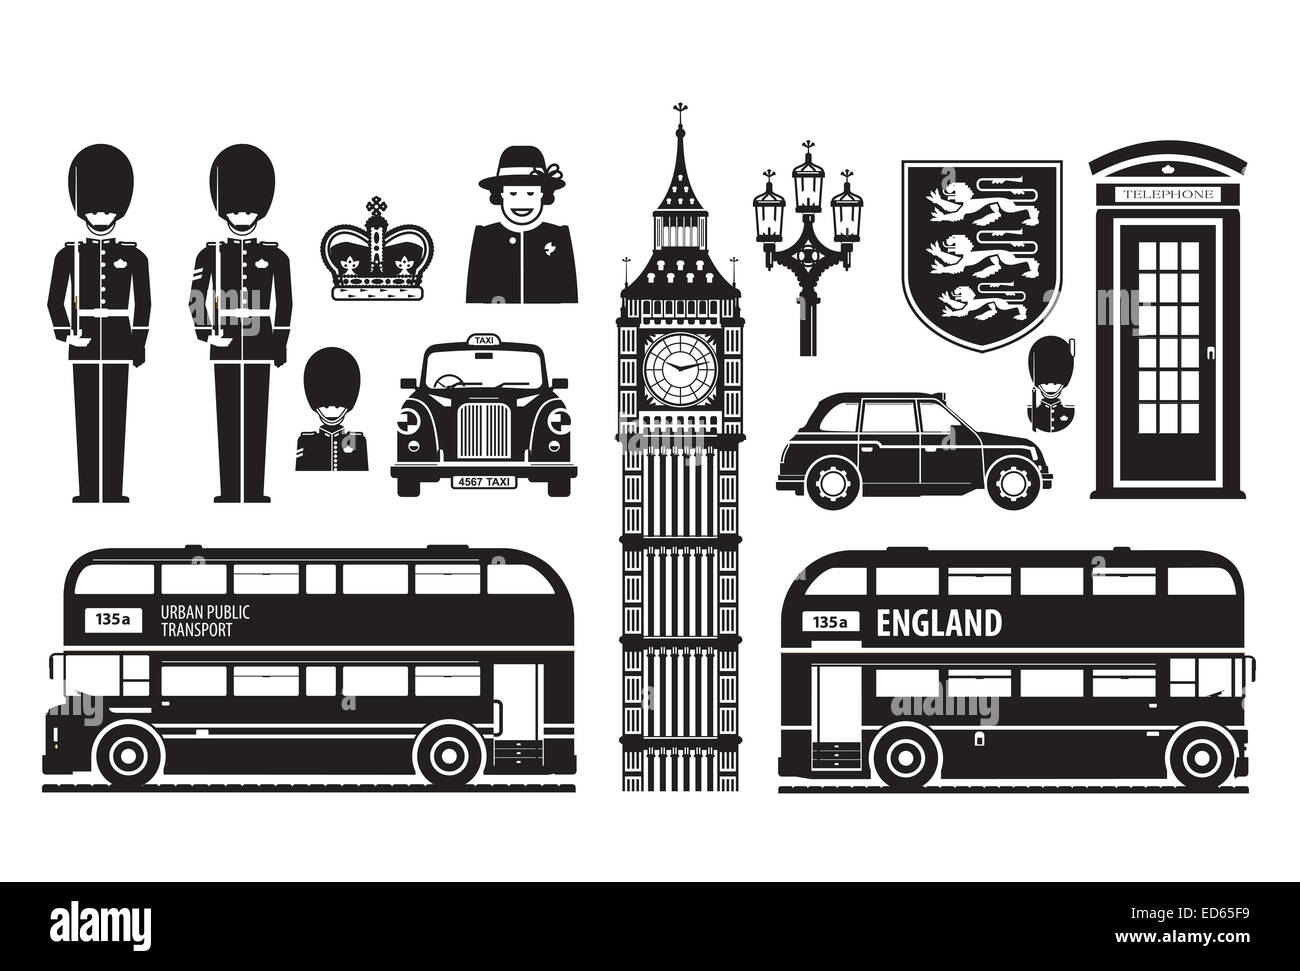 Inghilterra, London, Regno Unito insieme di icone Foto Stock